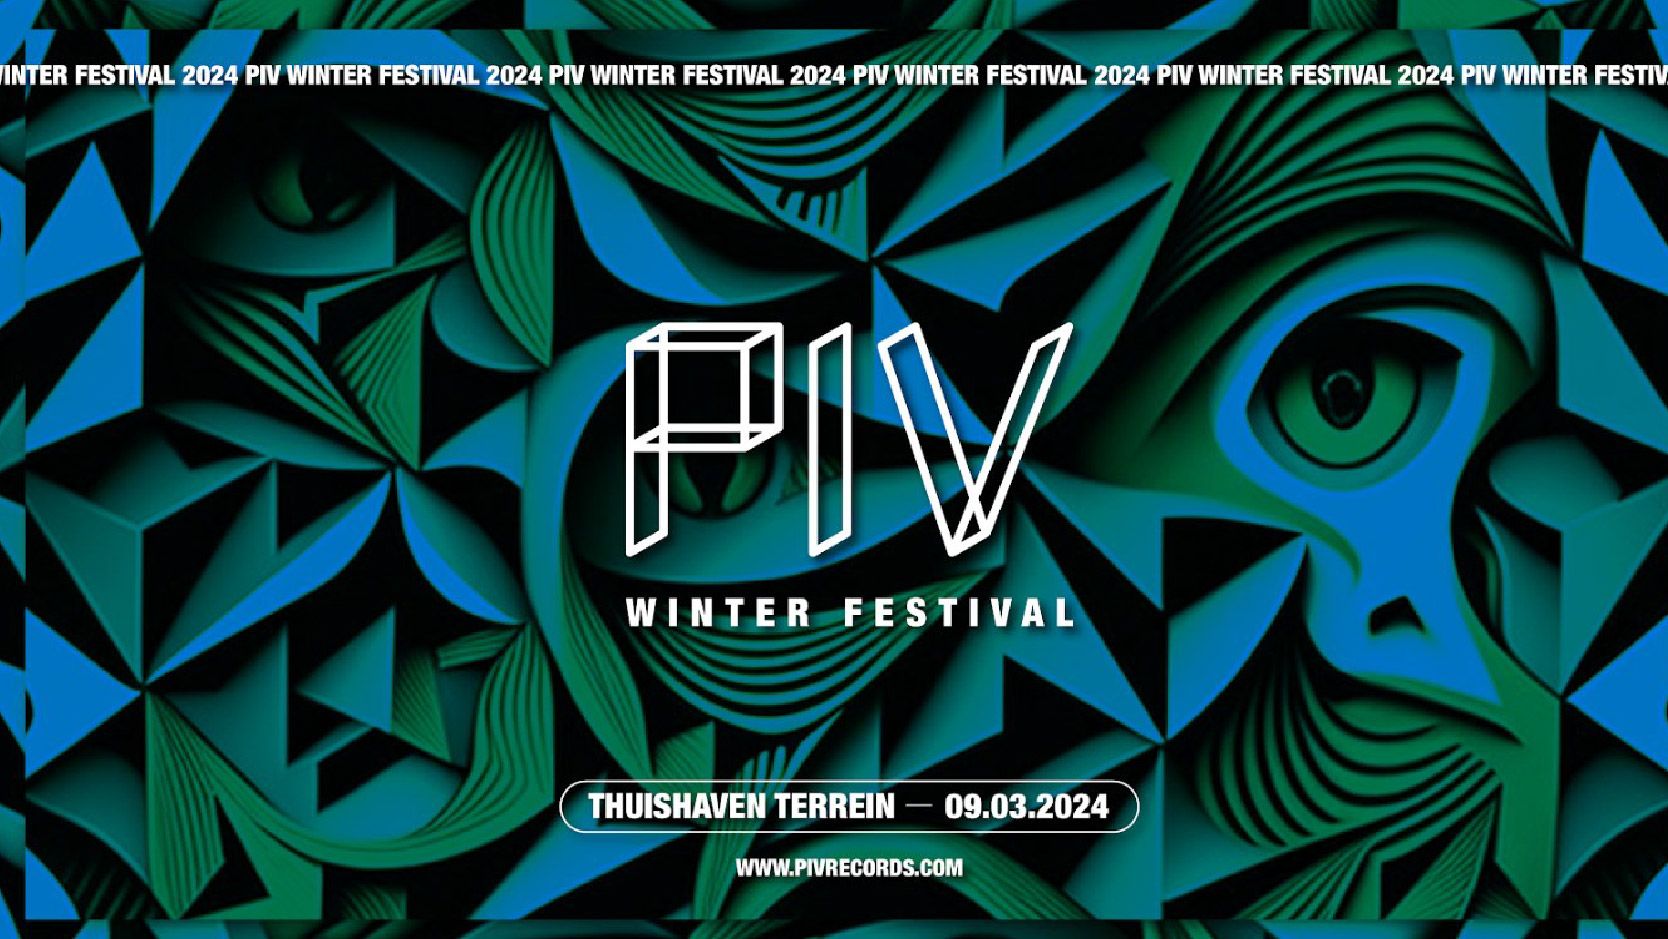 PIV Winterfestival cover